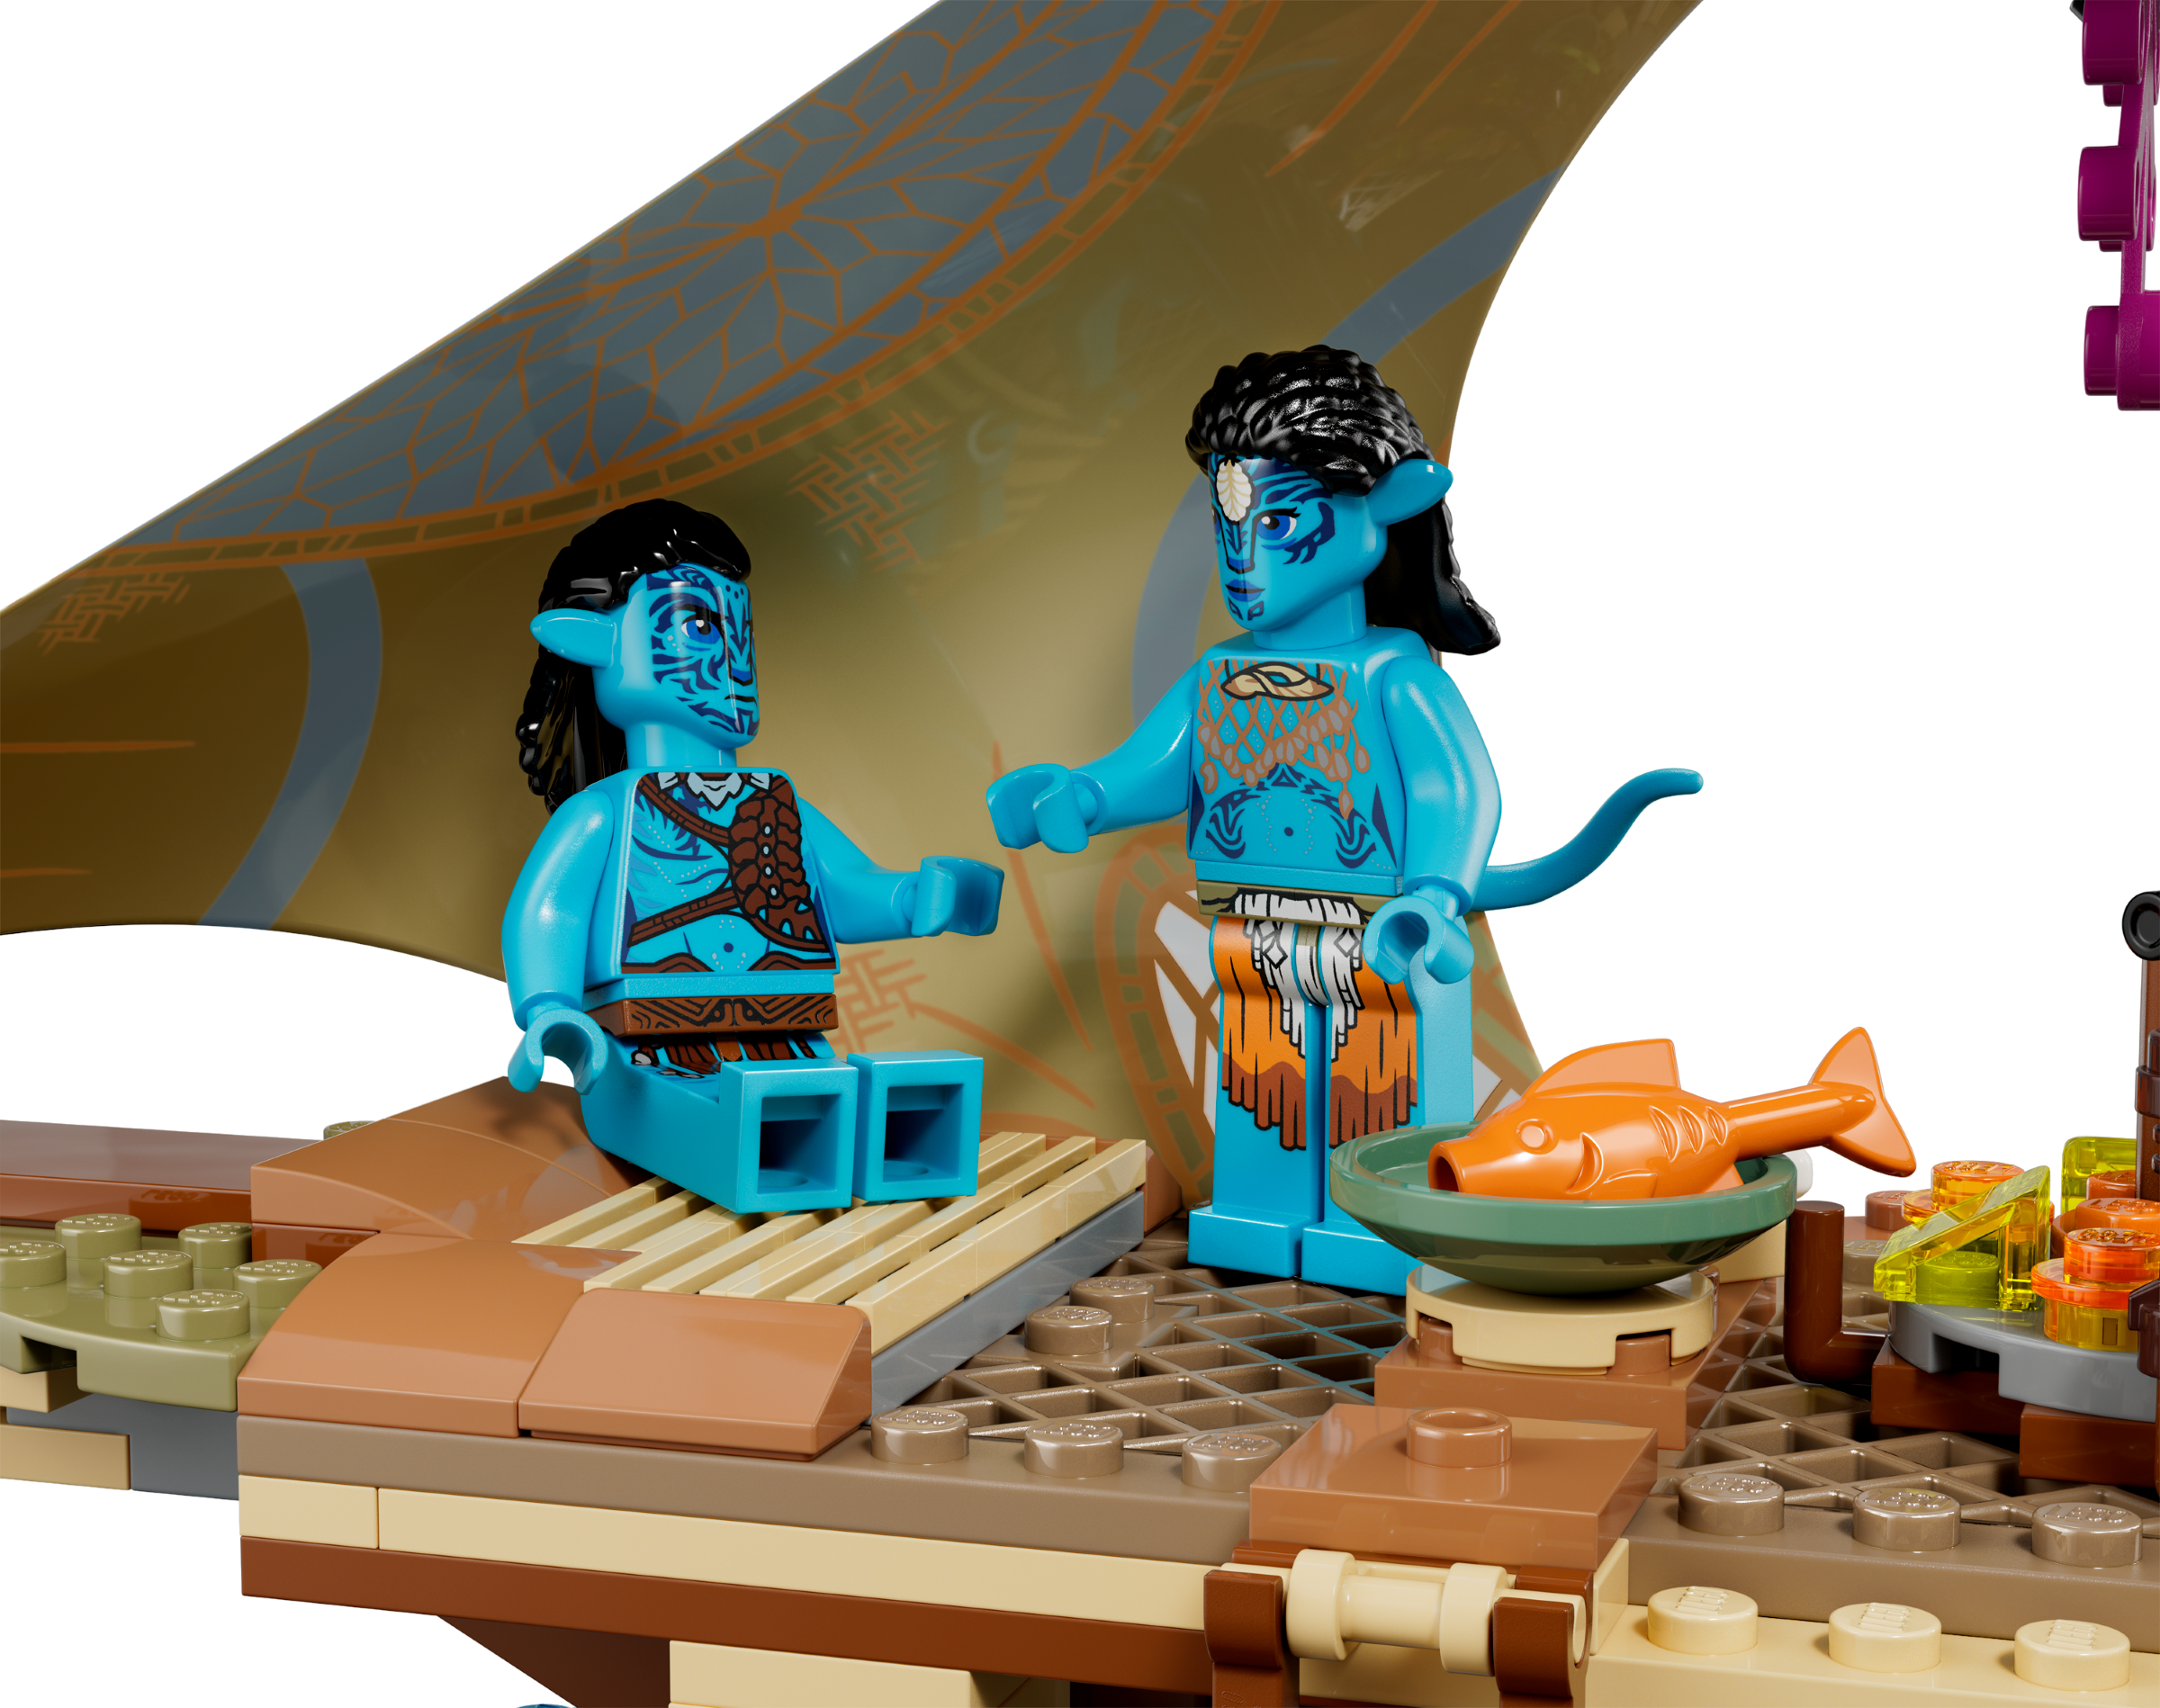 LEGO 75578 Avatar Hogar en el Arrecife de los Metkayina, Pueblo para  Construir, Canoa de Juguete, Escenario Pandora, Película Avatar: The Way of  Water : : Juguetes y juegos